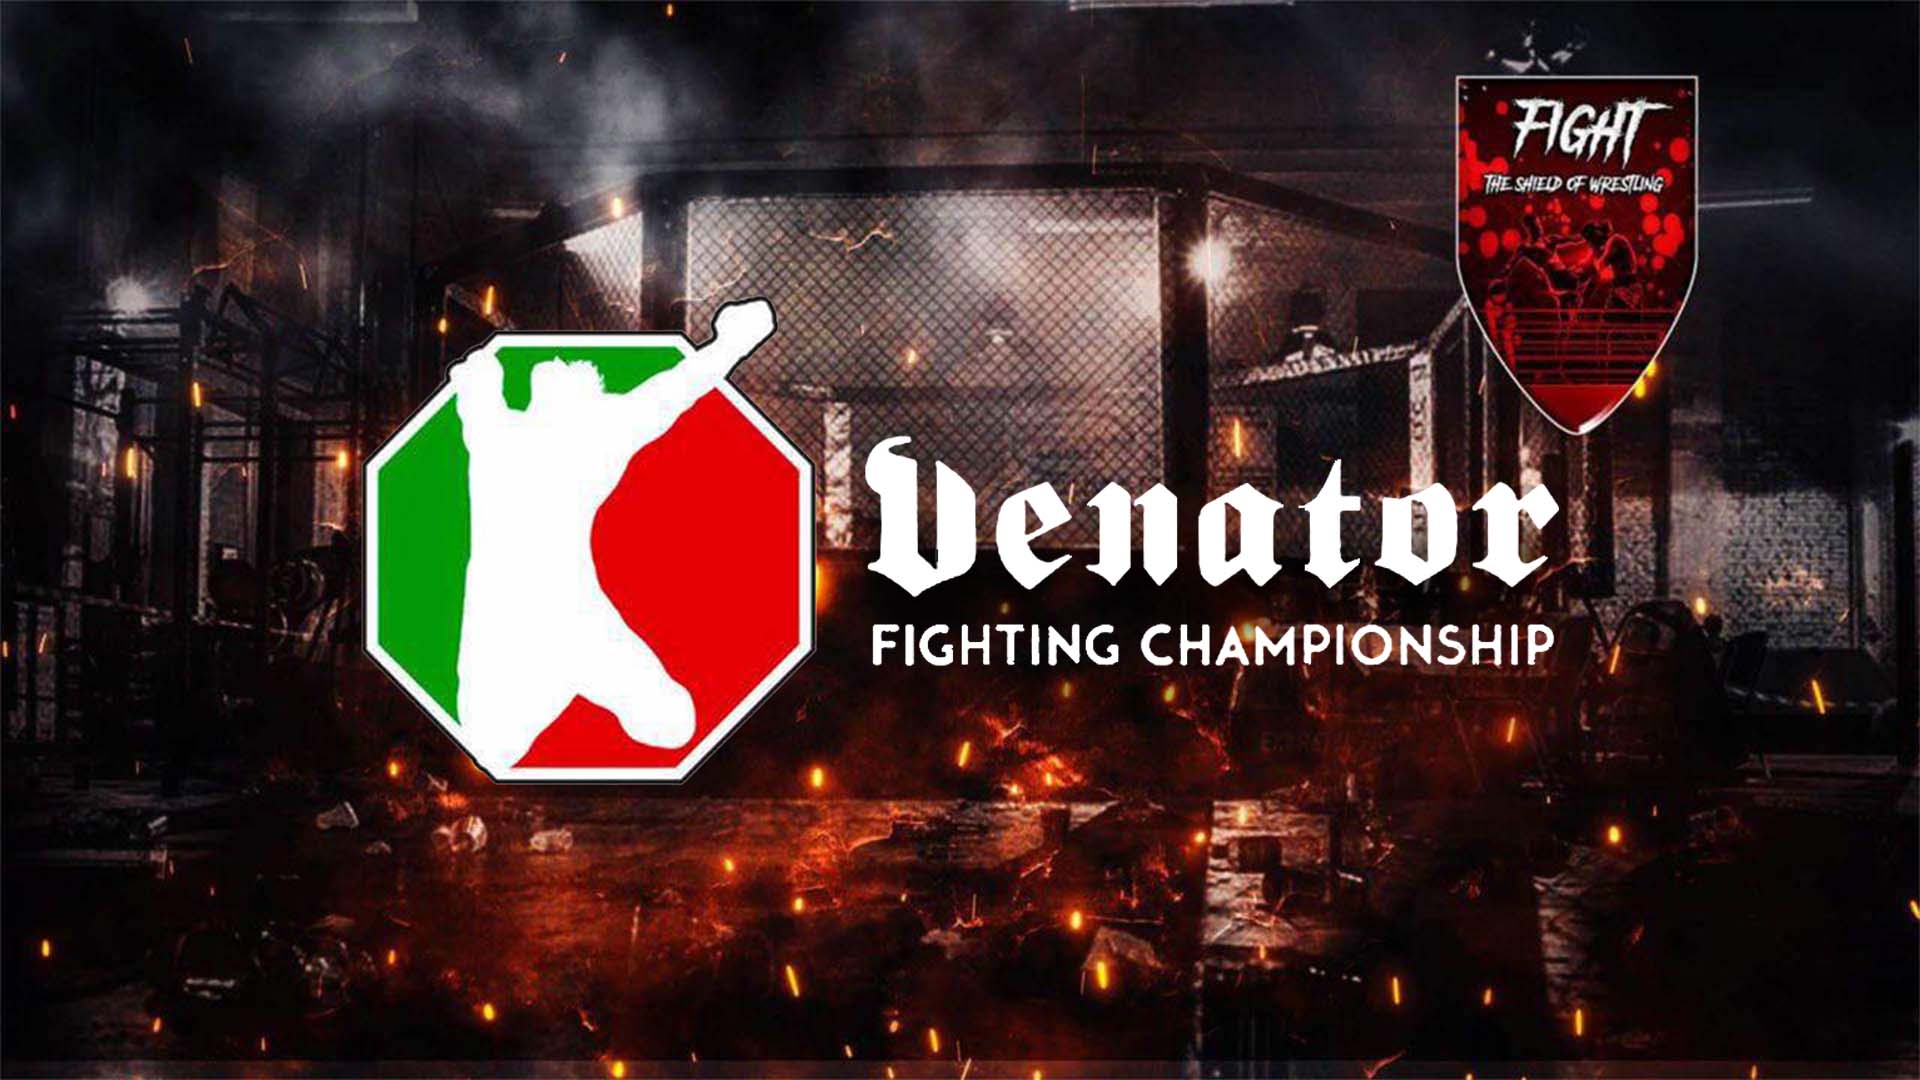 Venator FC 12: due nuovi fighter debutteranno all’evento